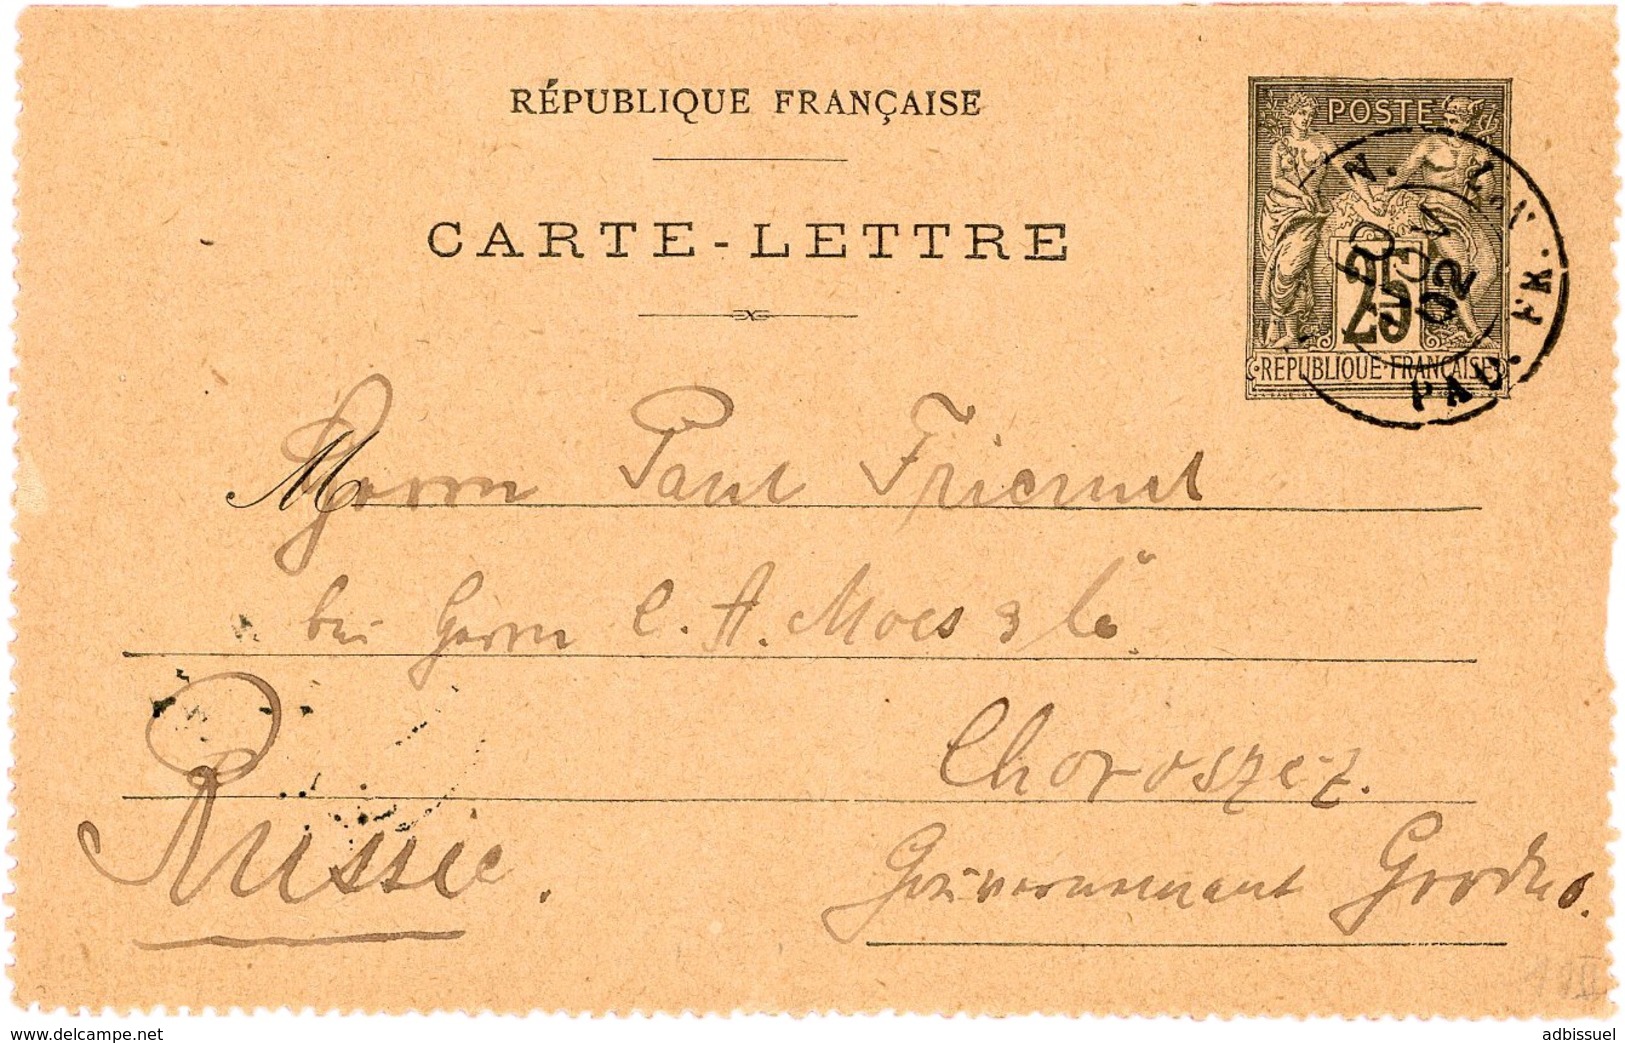 1902 Carte Lettre 25ct Adressée En RUSSIE Obl. C.à.d "LIGNE N. PAQ. FR. N°7 10/11/02" (Escale De Shanghai, Indice 13) - Kaartbrieven